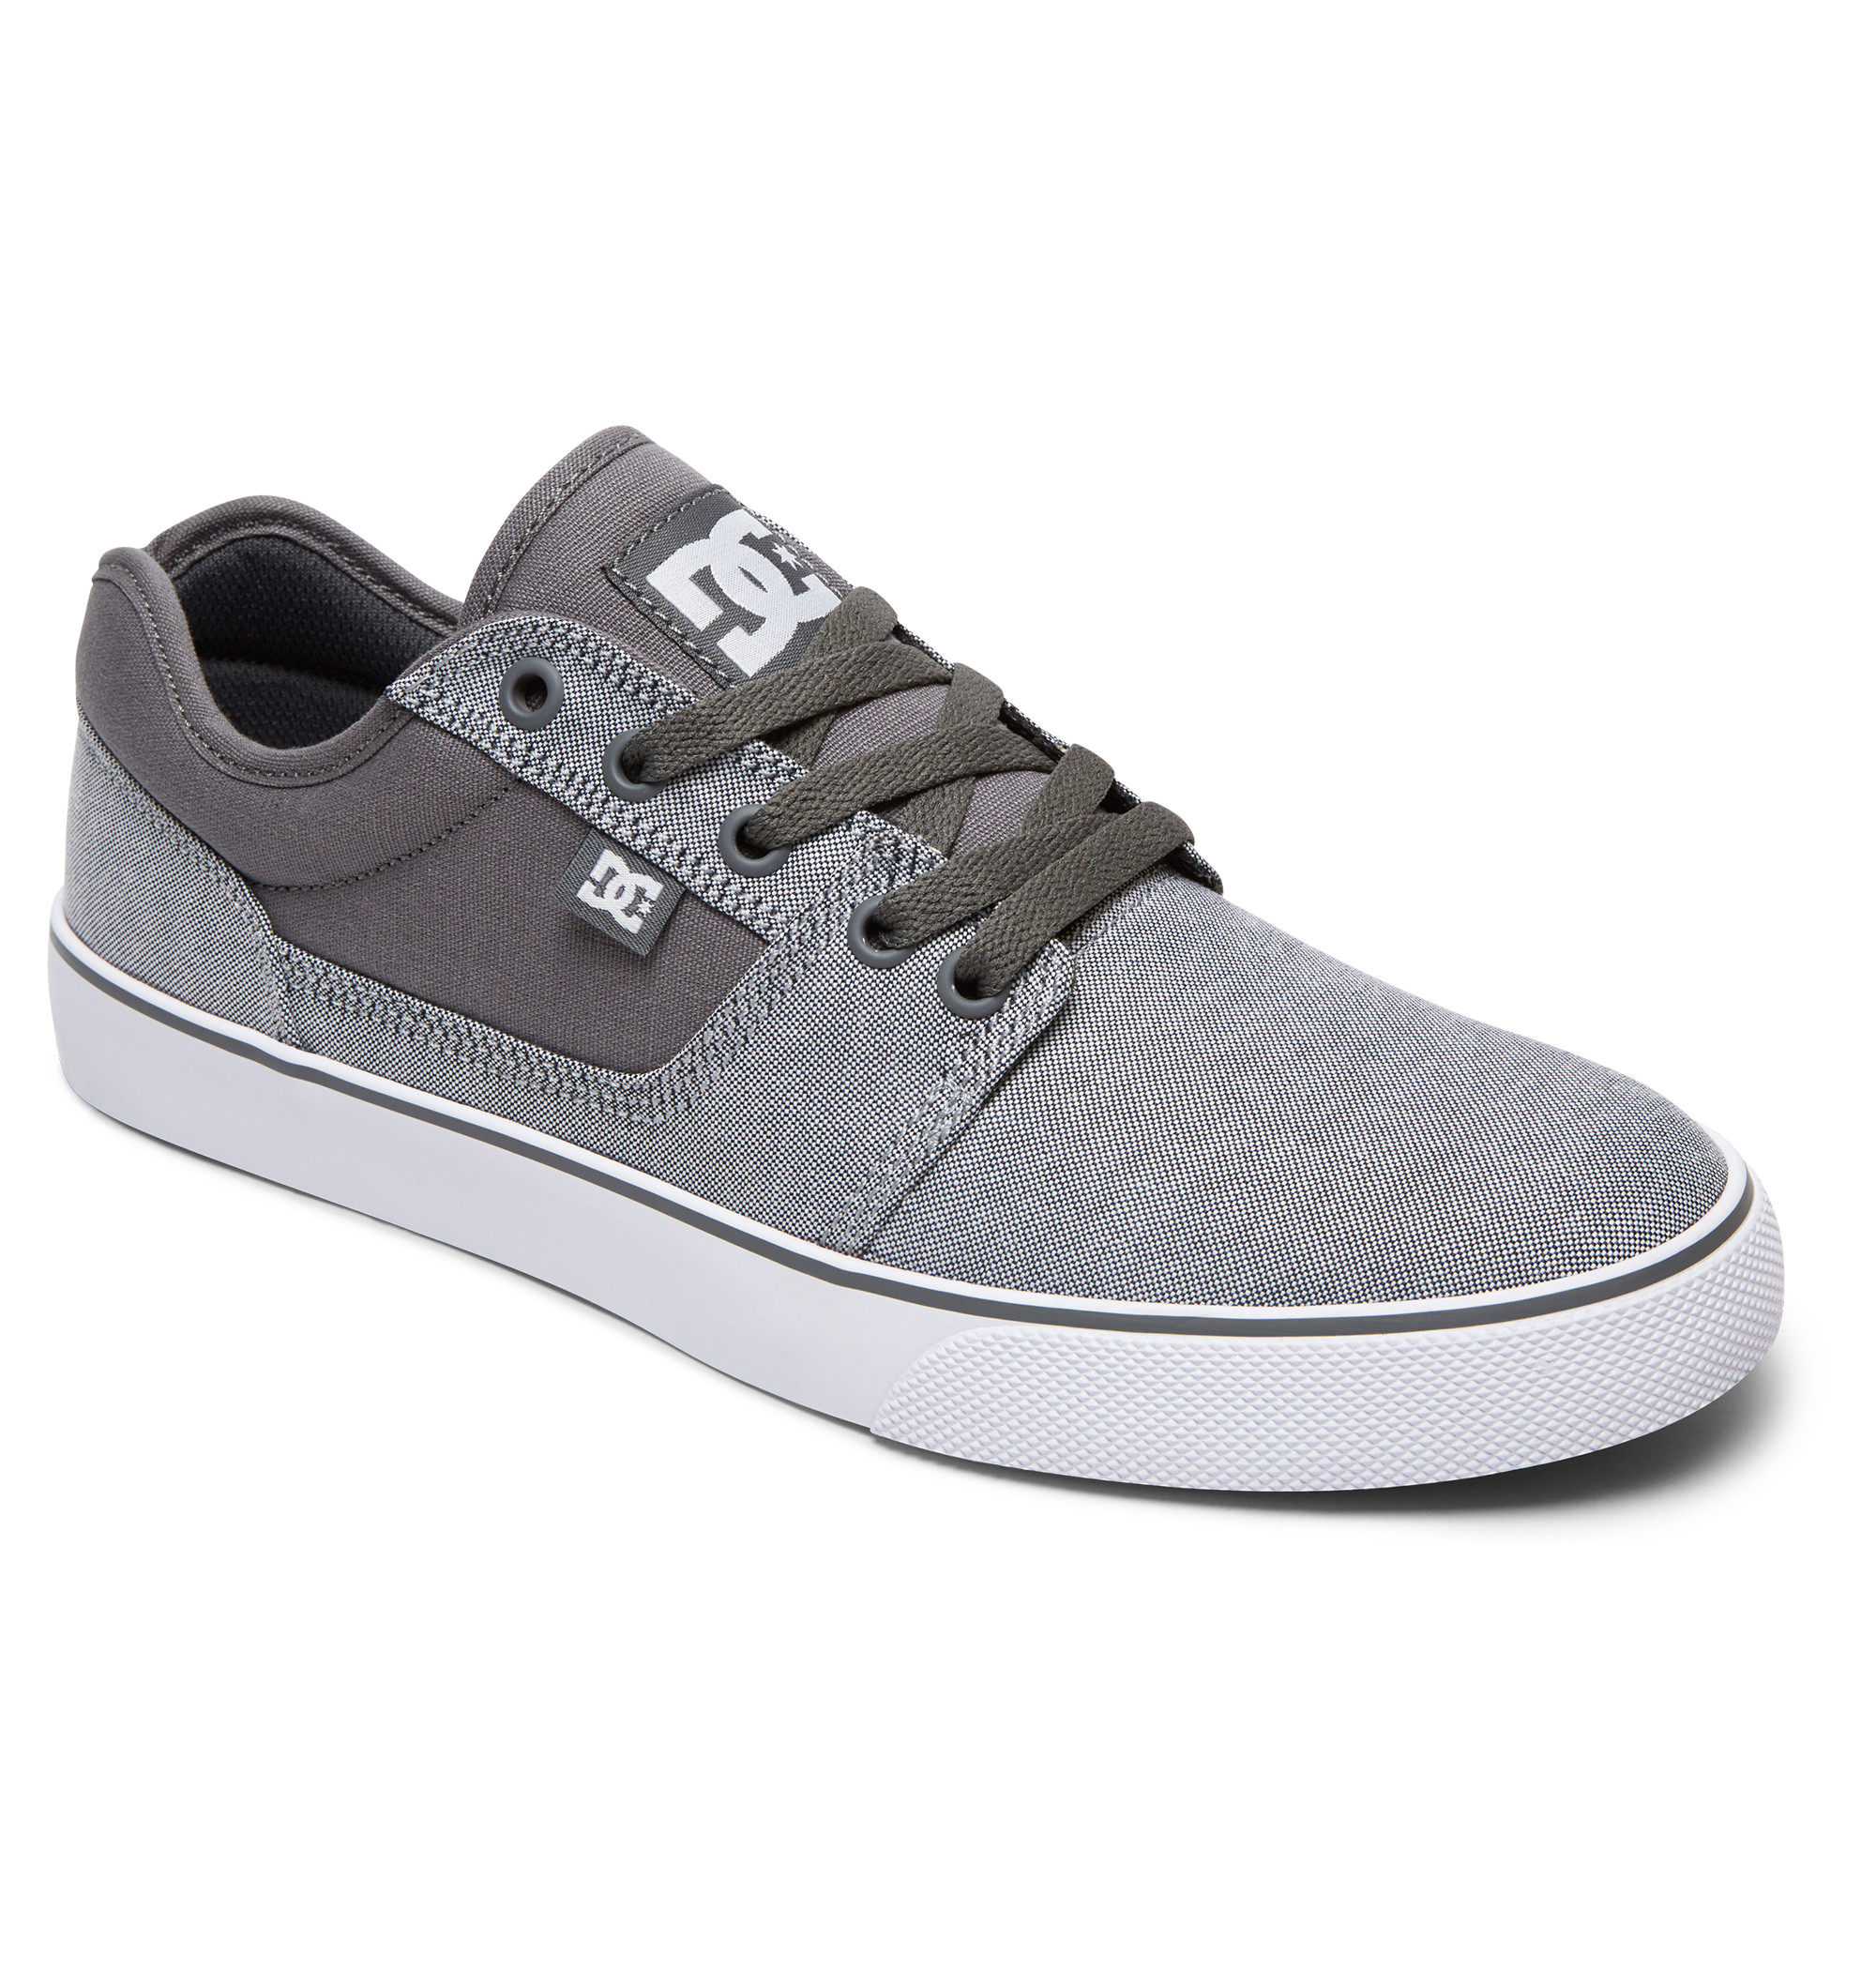 Sneakers DC Tonik Tx Se grey/white 